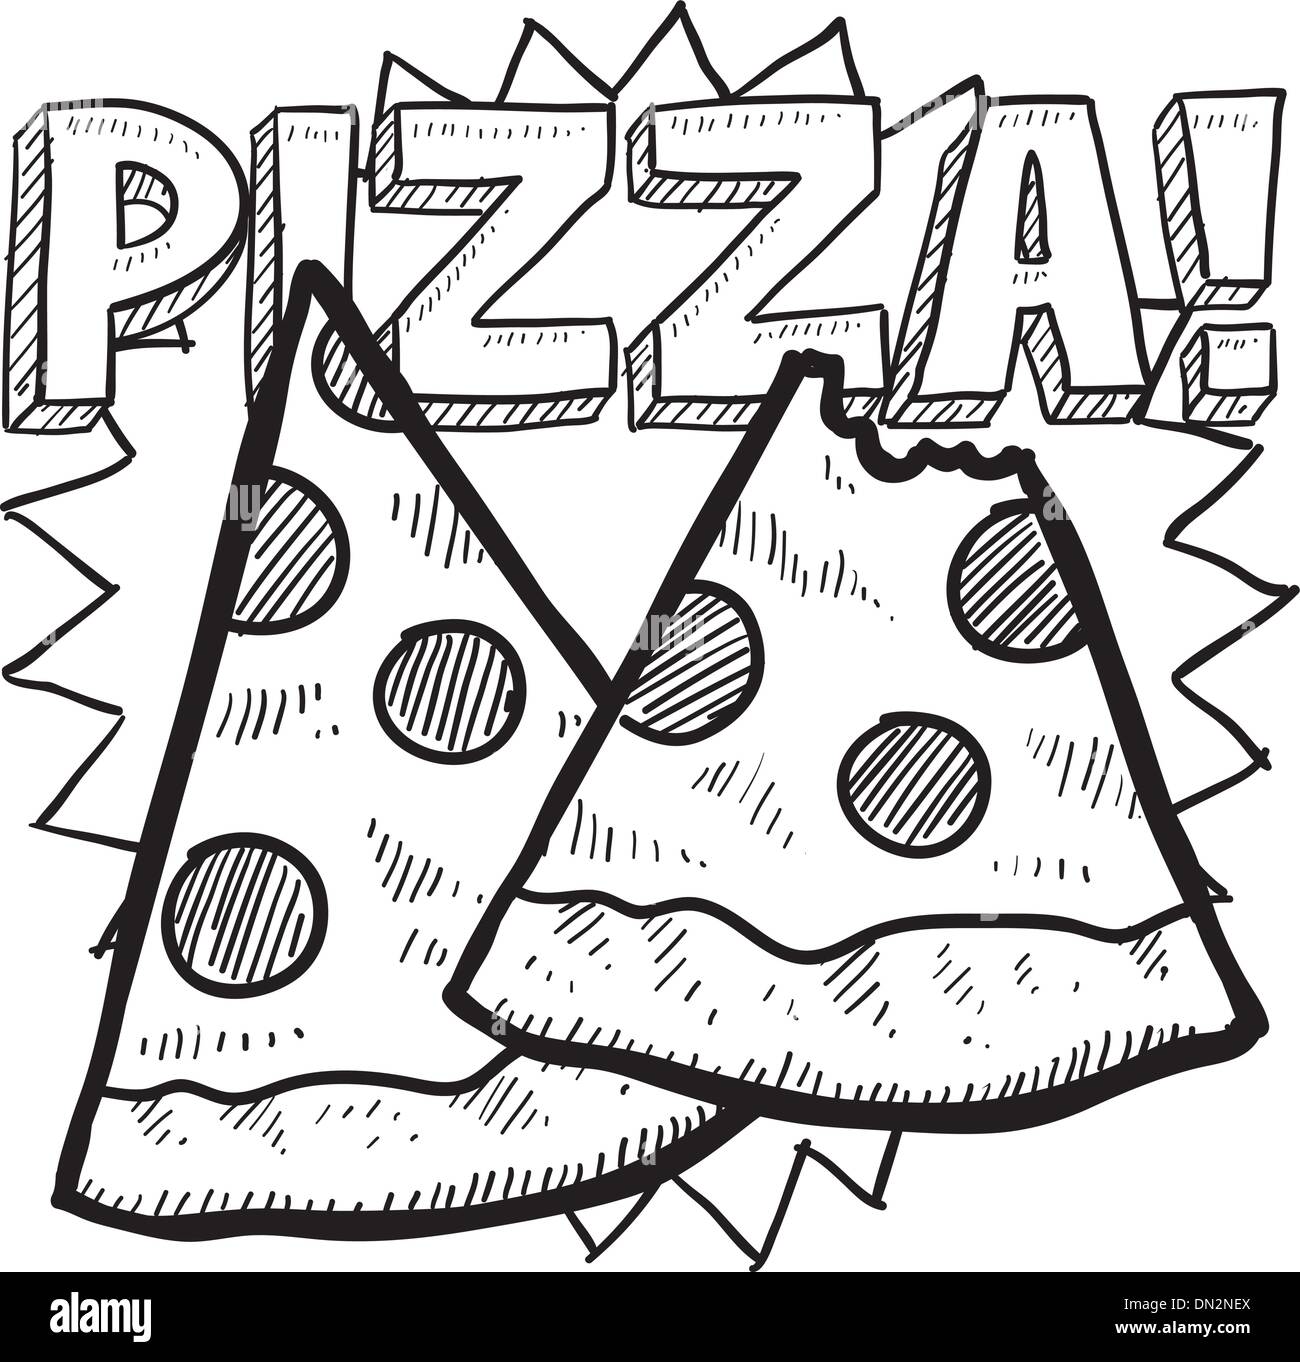 Croquis de tranches de pizza Illustration de Vecteur